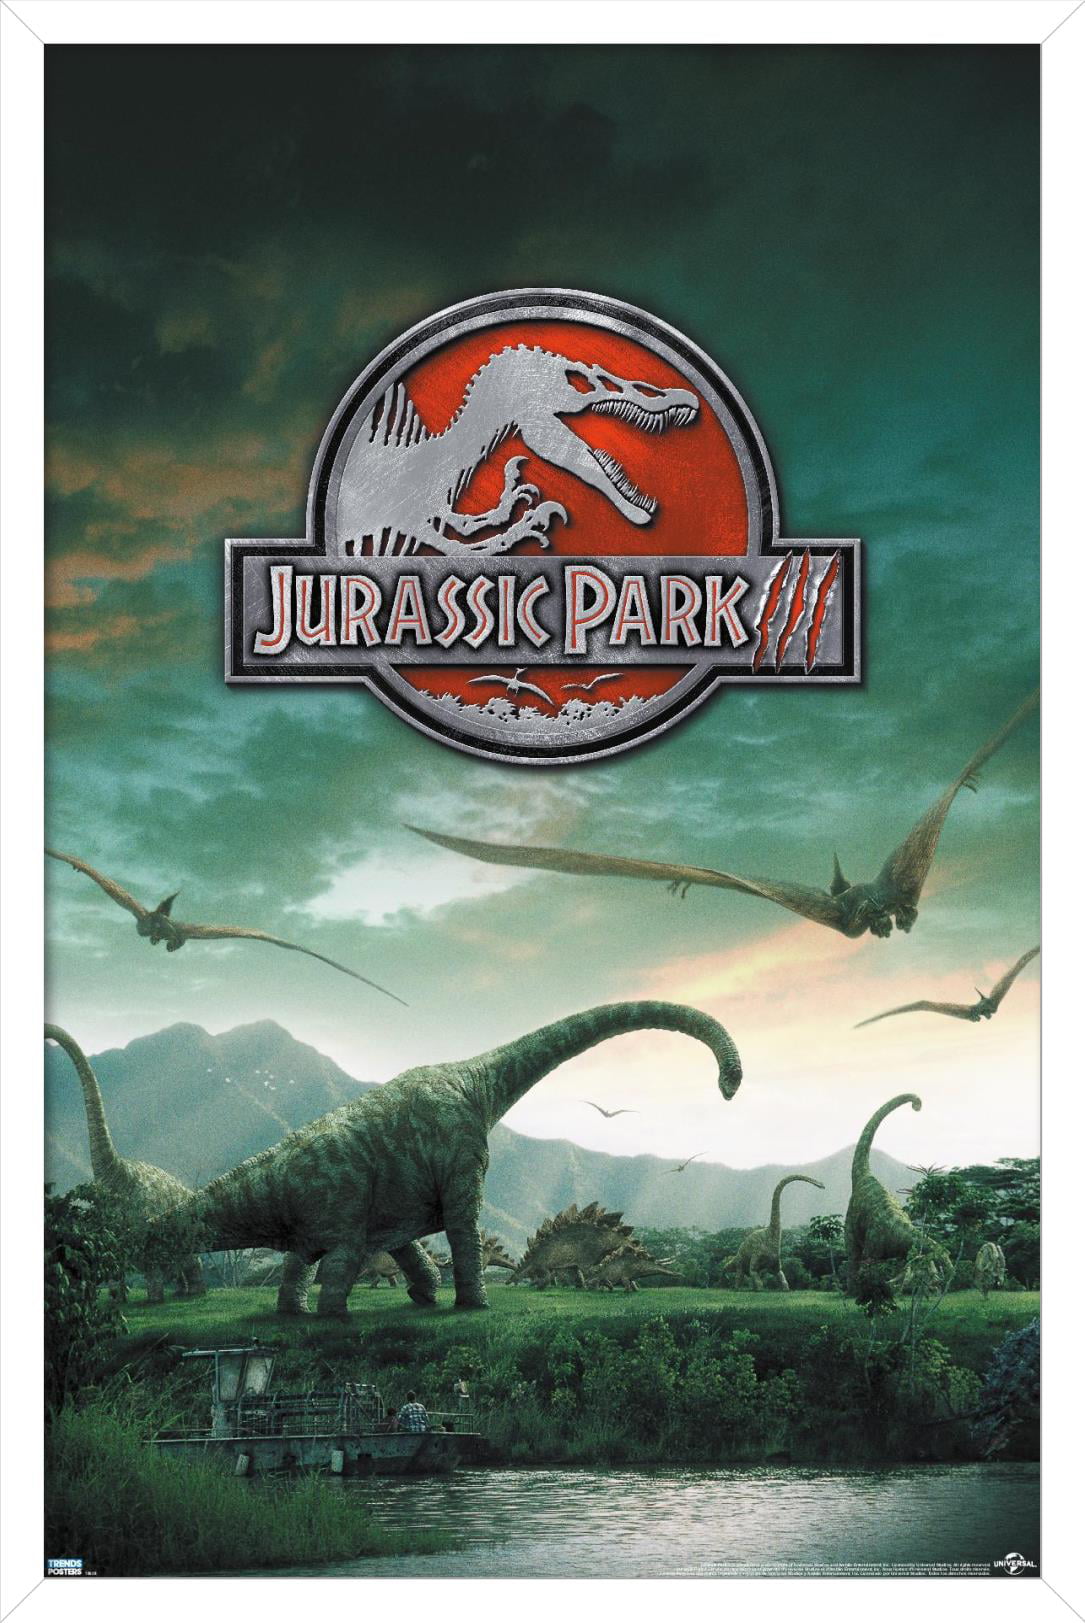 Jurassic Park 3 - Dinosaurs Wall Poster, 22.375 x 34, Framed